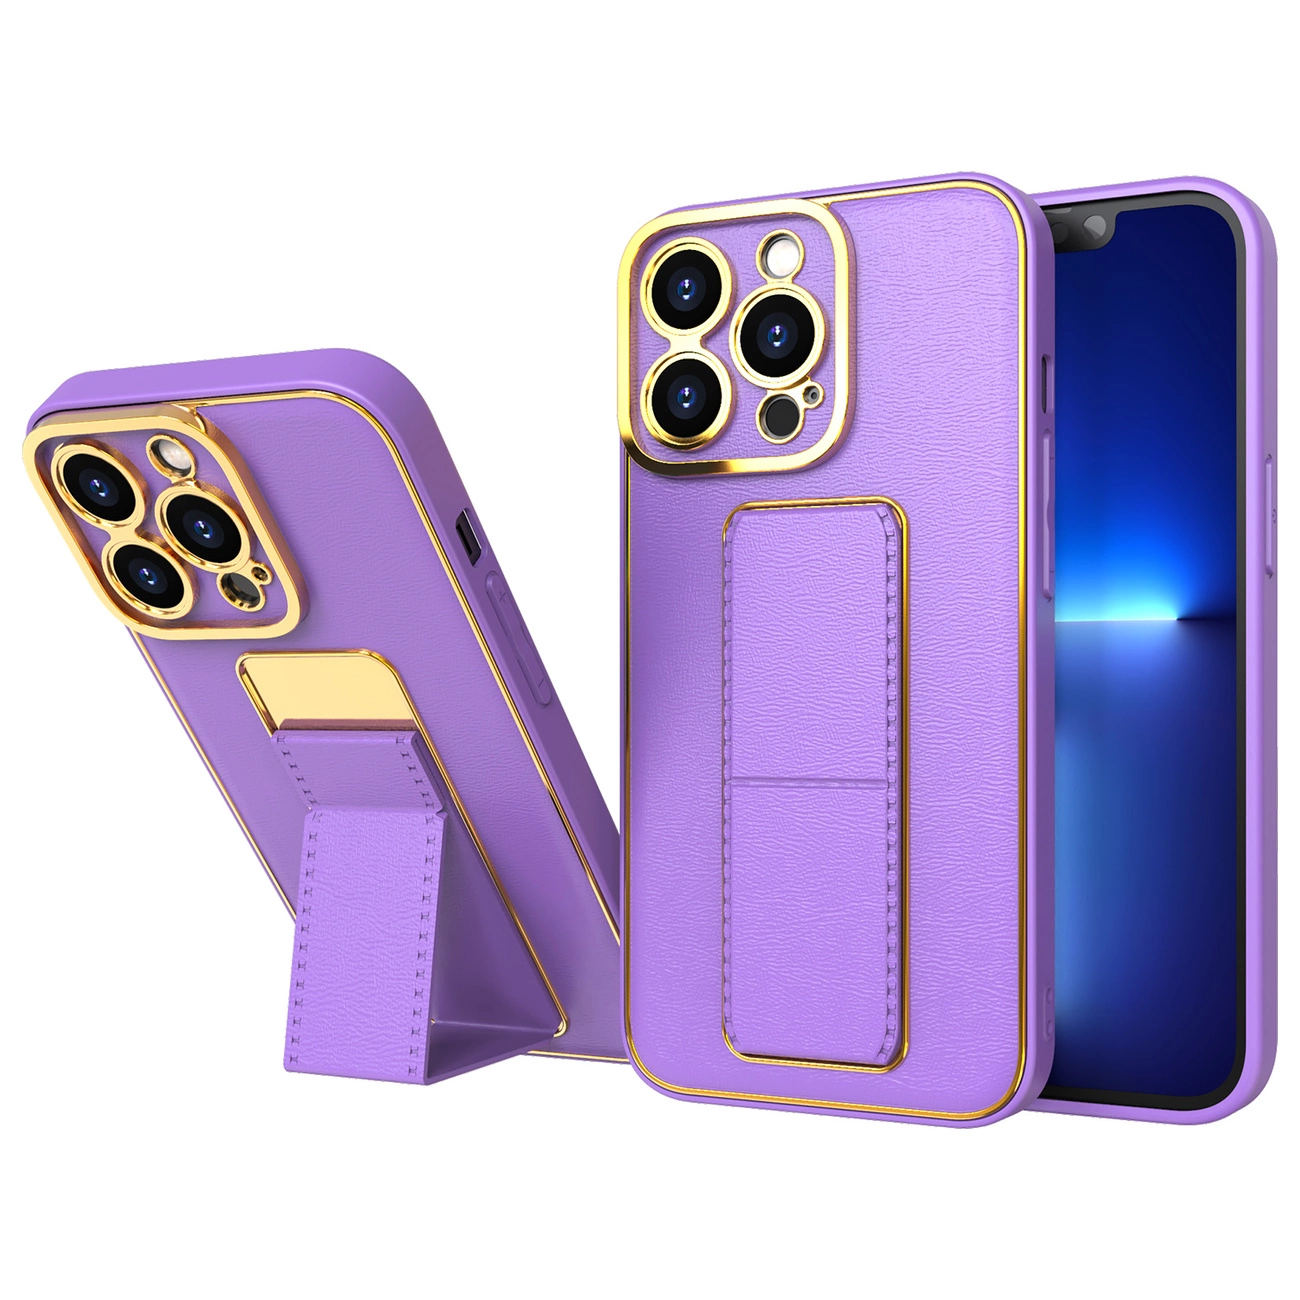 Hurtel Nové pouzdro Kickstand pro iPhone 12 Pro se stojánkem fialové barvy